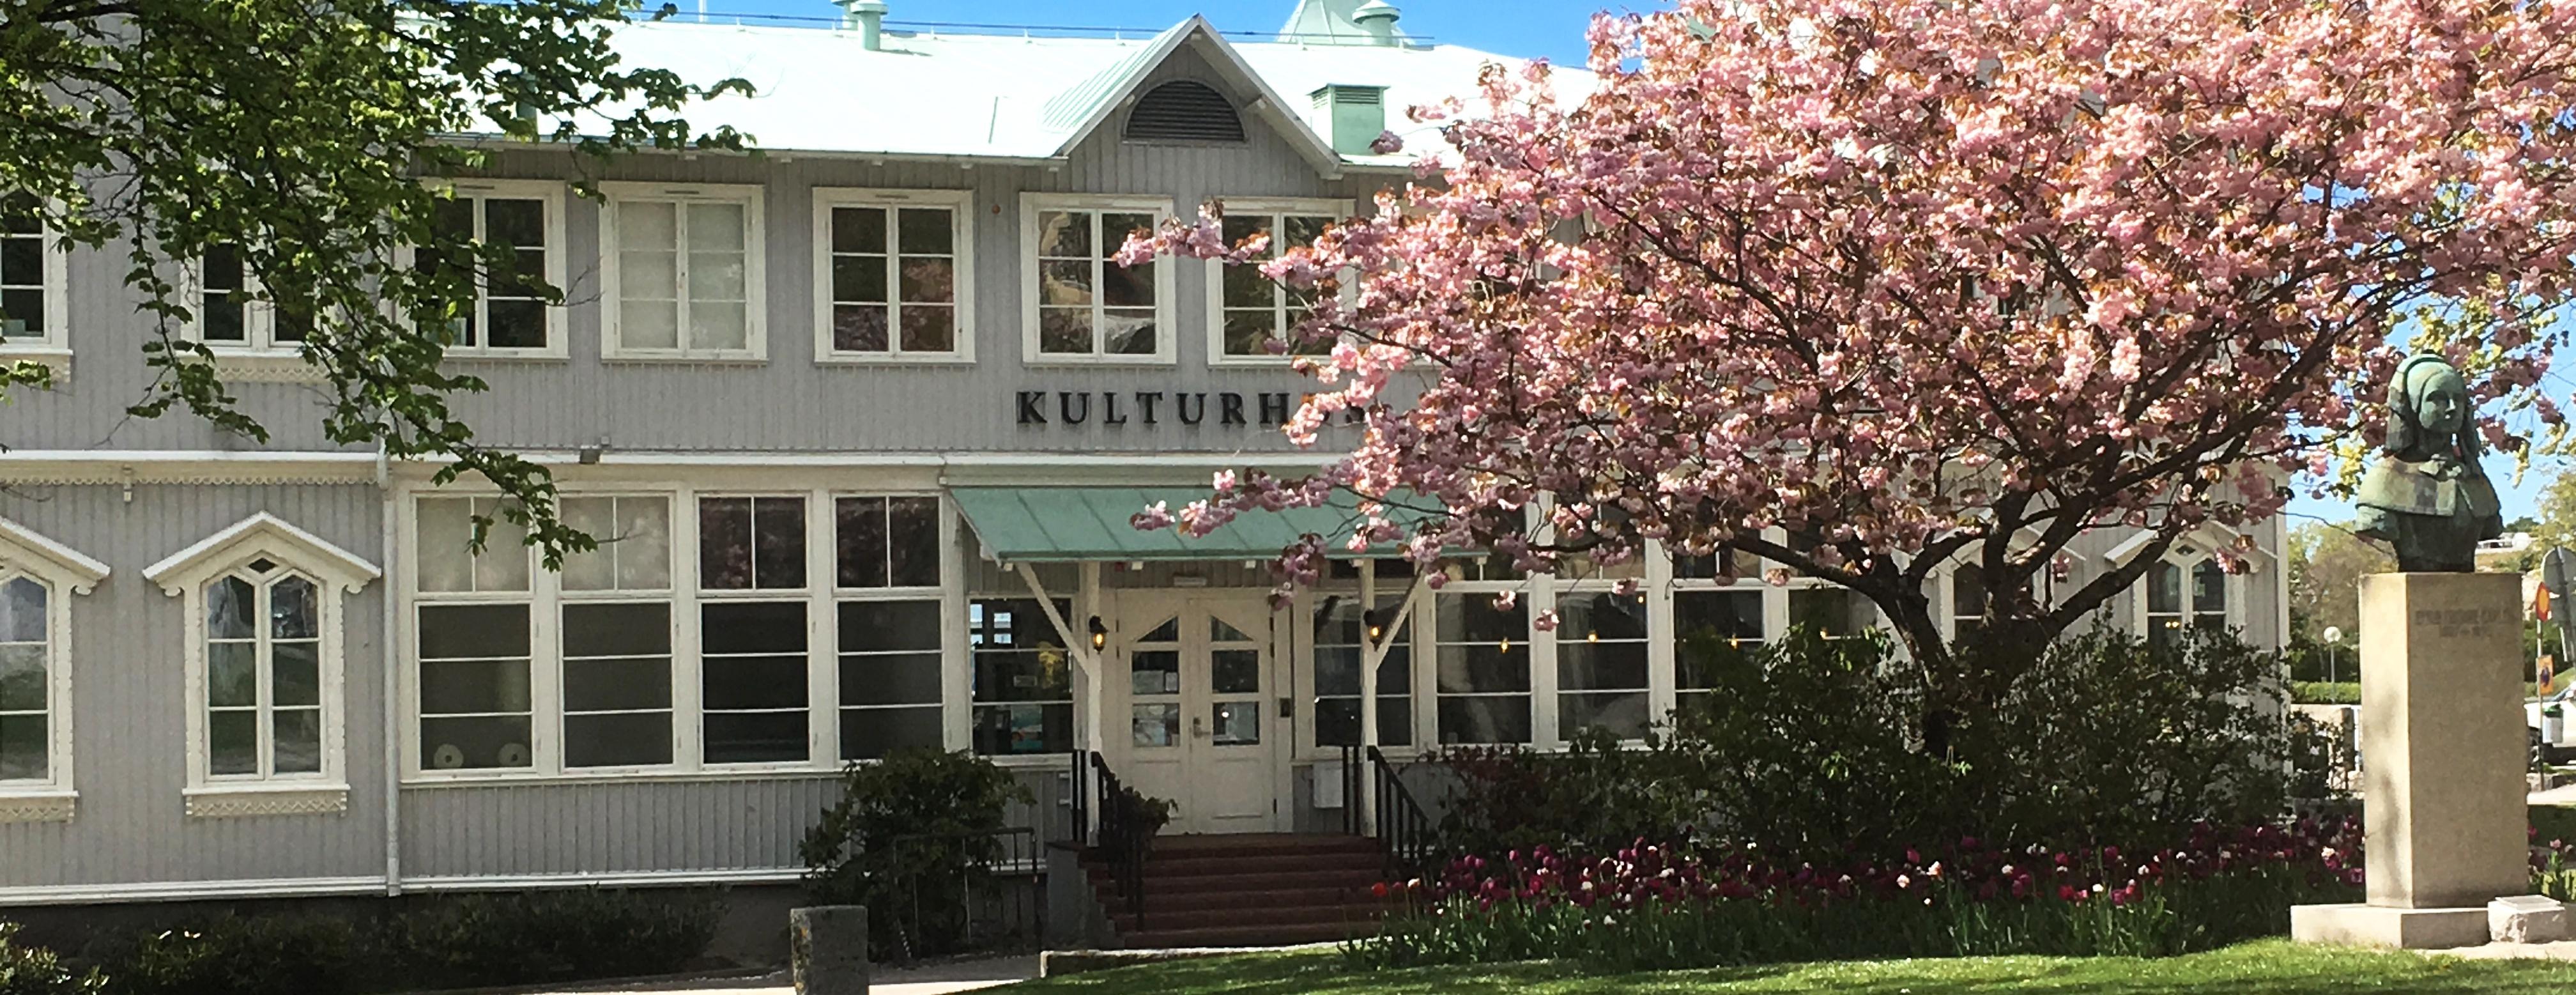 Kulturhuset i maj med blommande rosa körsbärsträd utanför.